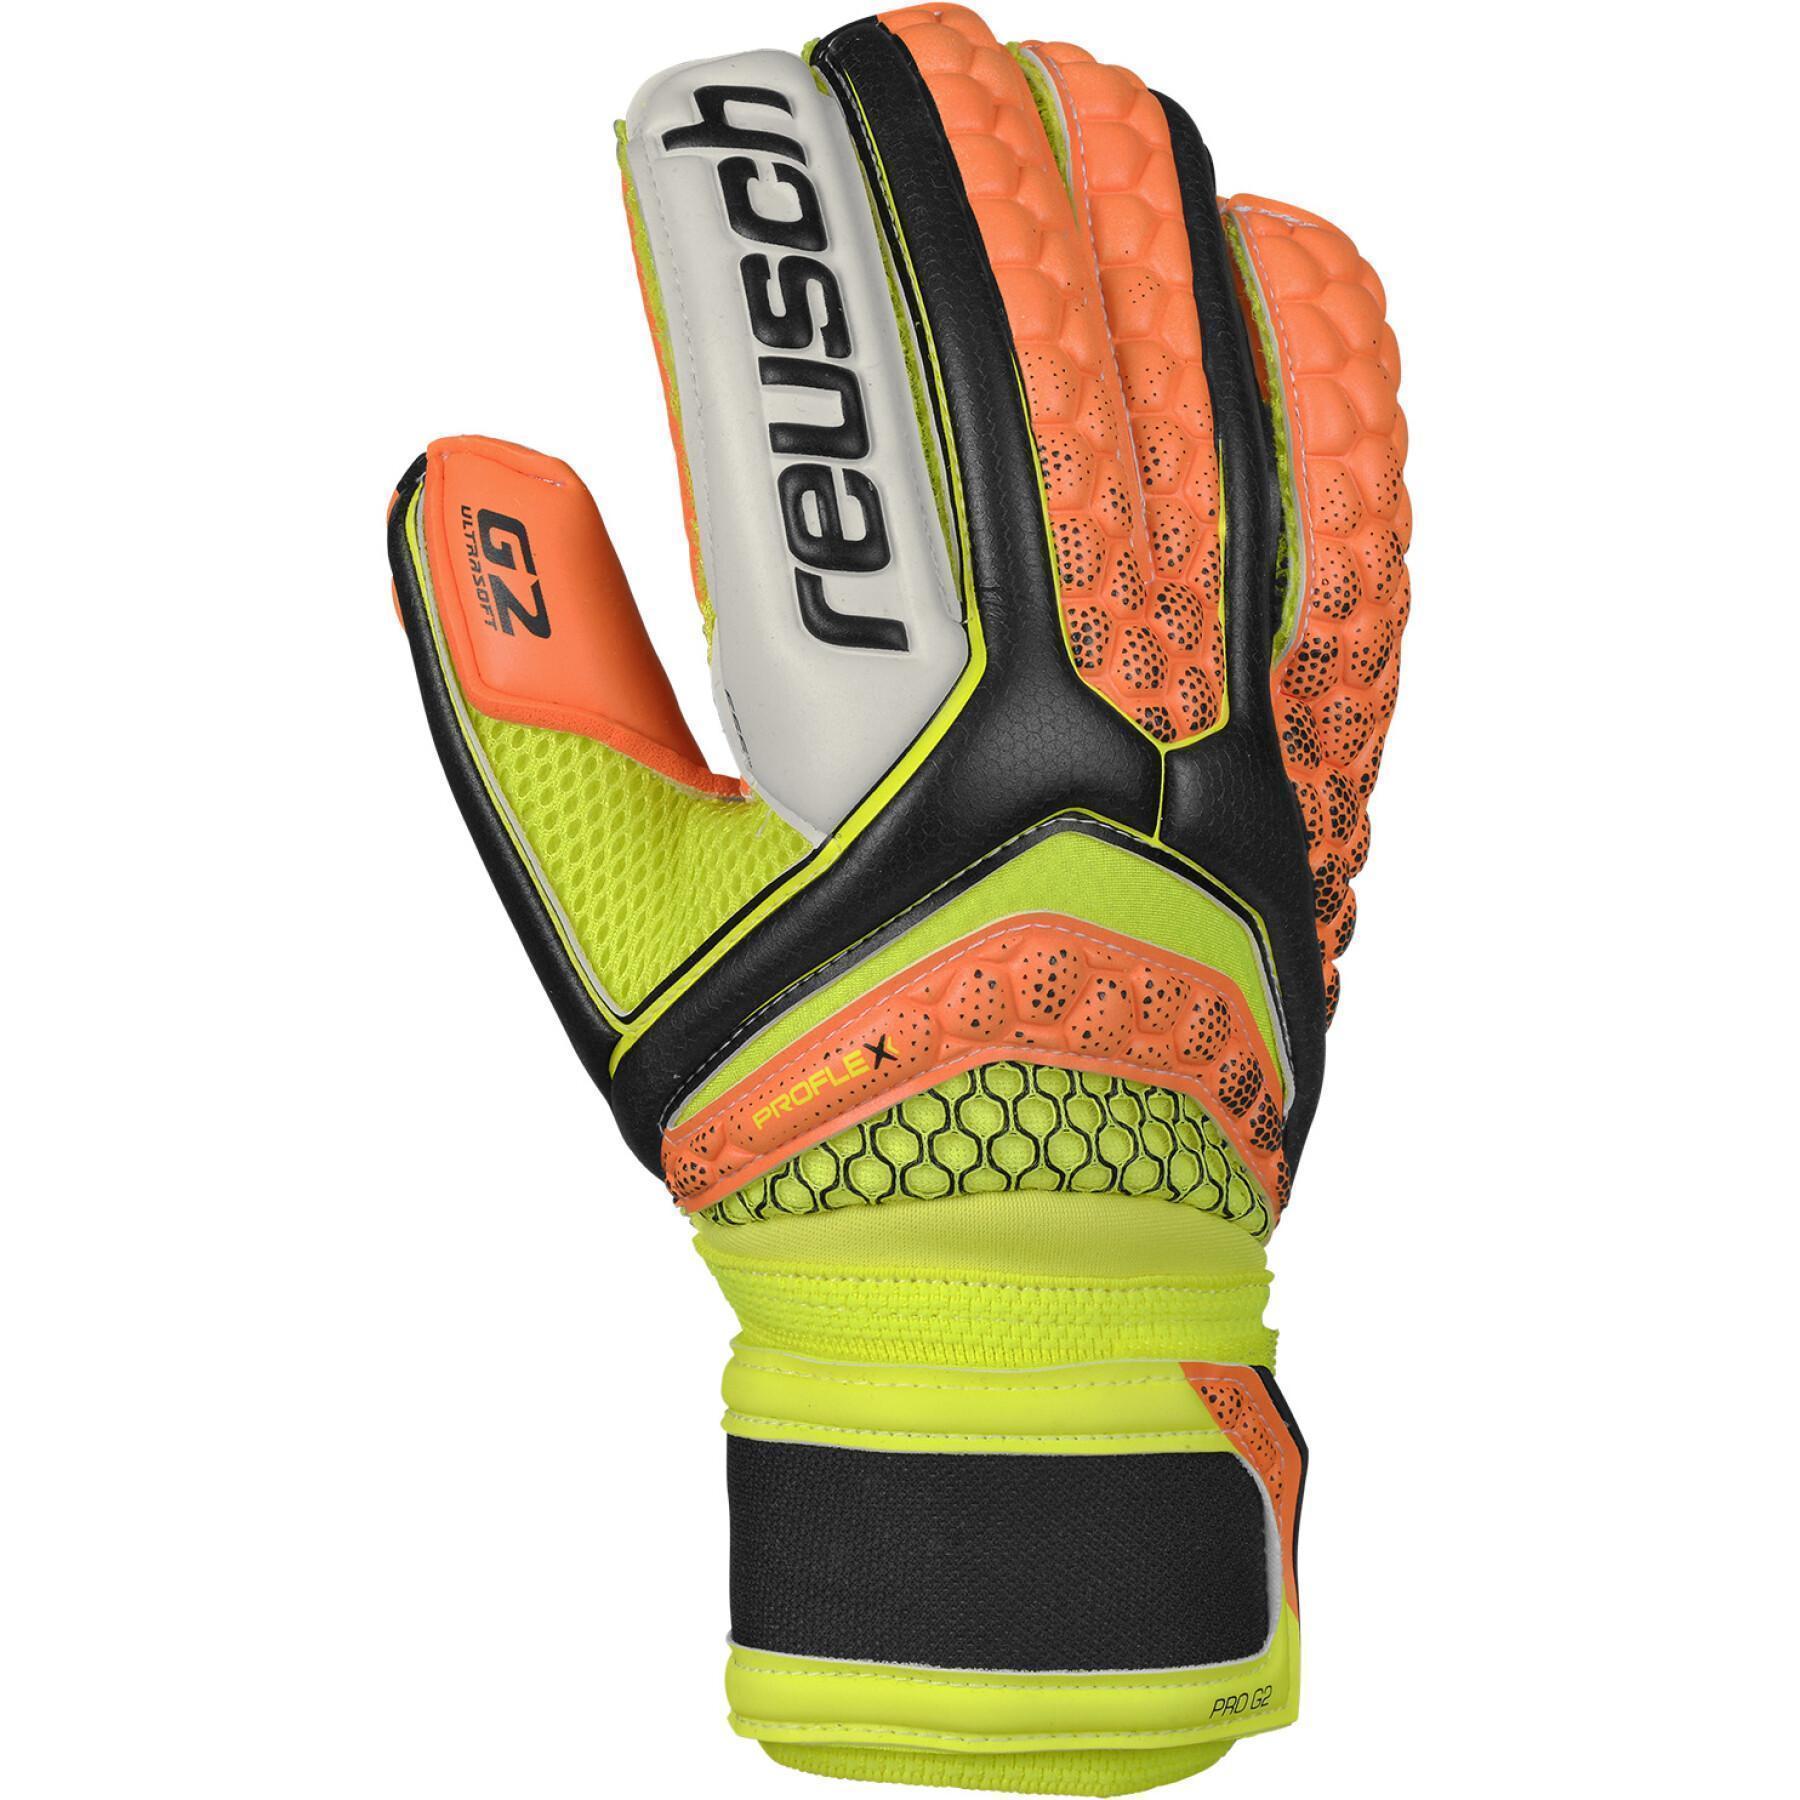 Goalkeeper gloves Reusch Re:pulse Pro G2